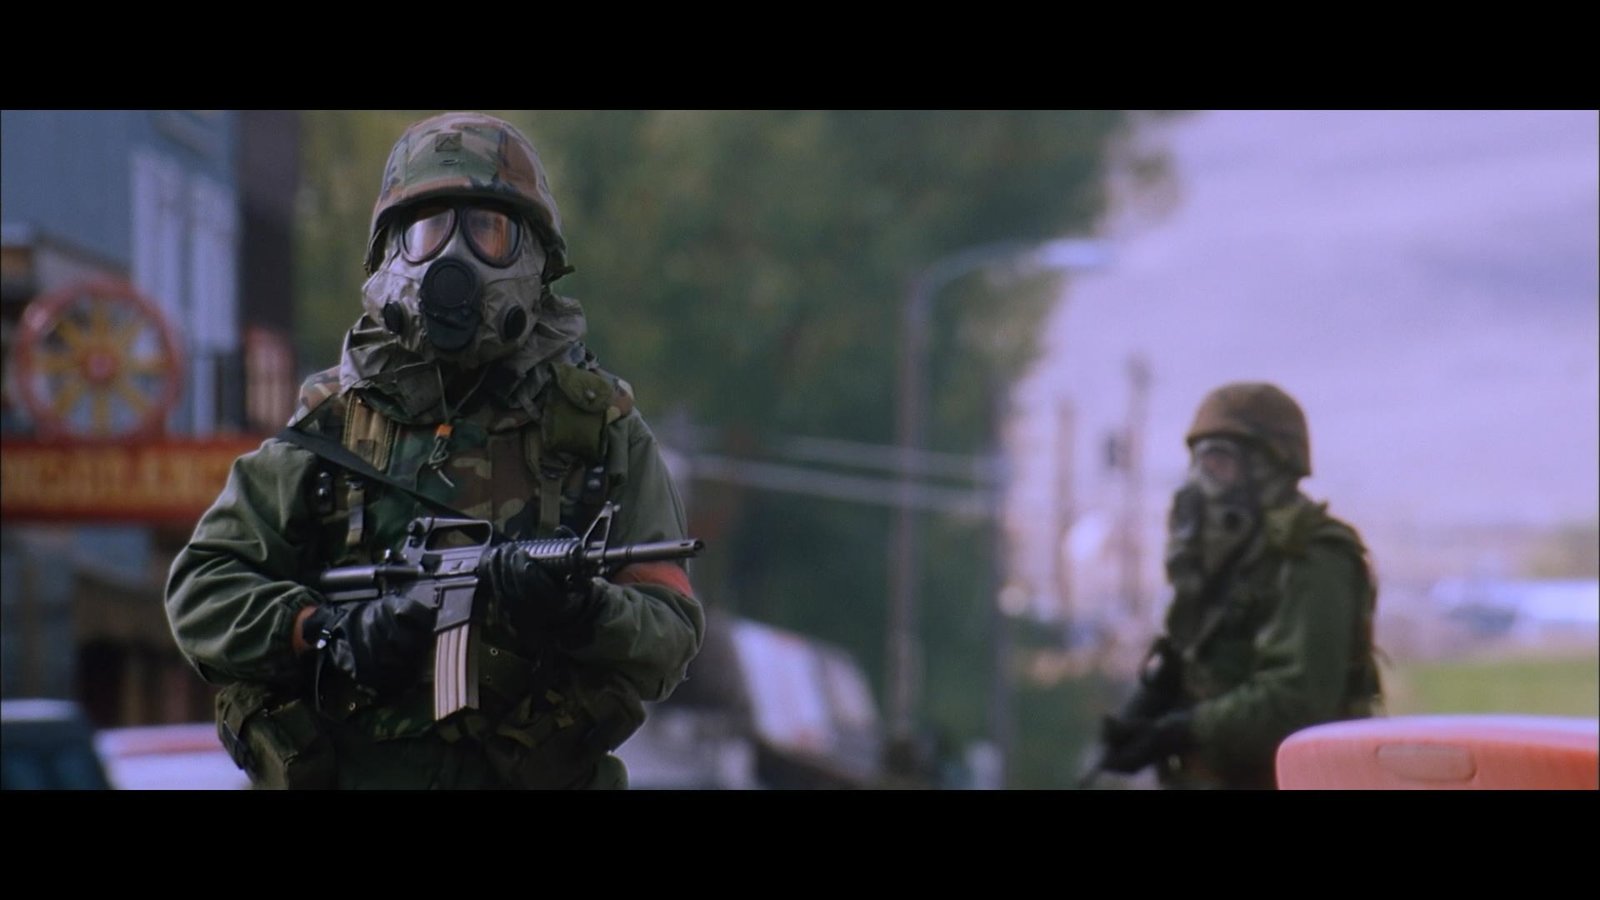 The Patriot - Kampf ums Überleben (uncut Fassung, Neuauflage)  (Blu-ray Disc)